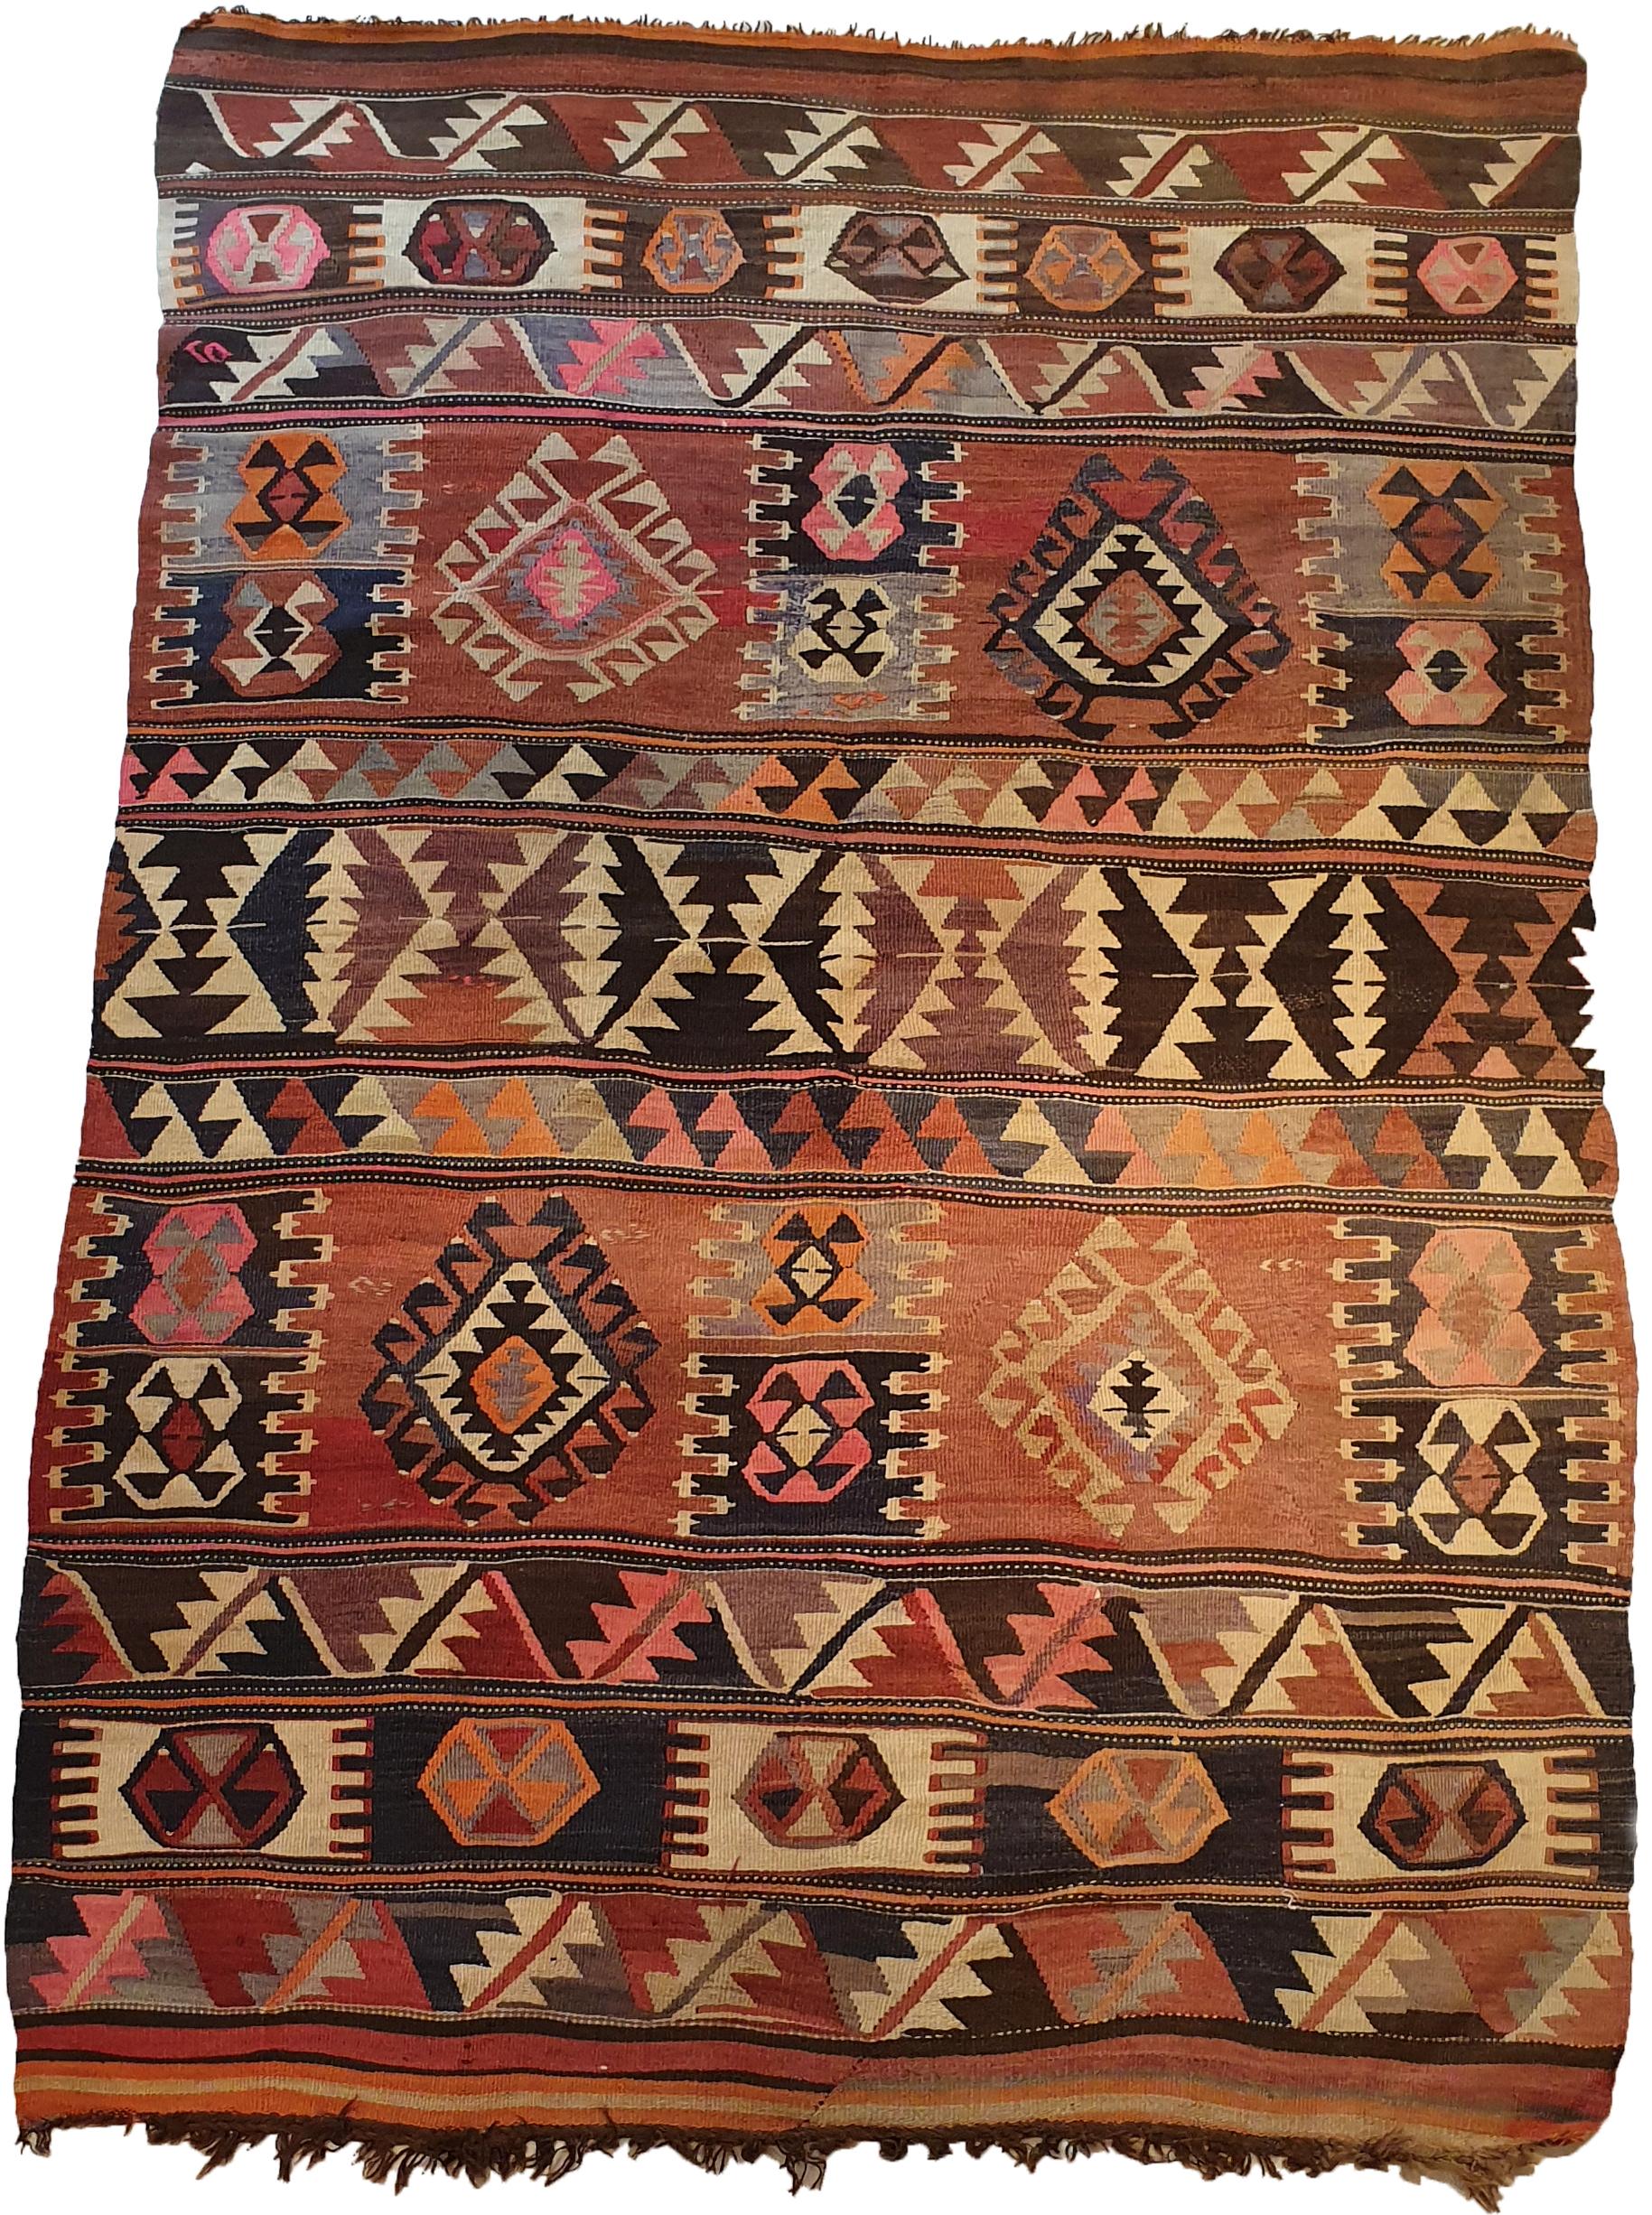 842 - Sehr schöner antiker Kelim aus der Schahsavane mit schönen natürlichen Farben mit blau-grün, orange und rot und geometrischem Stammesmuster. Ein Sammlerstück, komplett handgewebt mit Wolle auf Wollbasis.